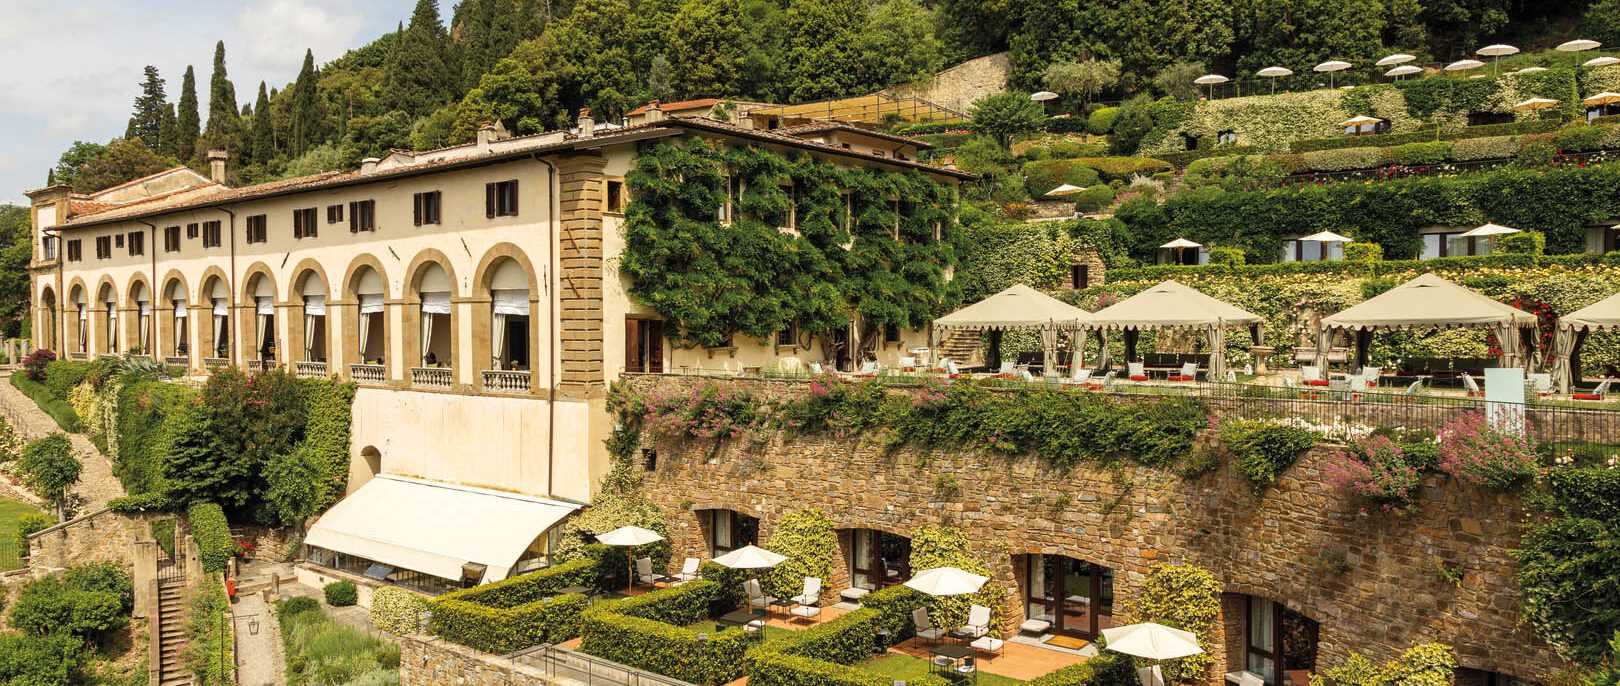 Nest Italy: Villa San Michele, A Belmond Hotel, Florence